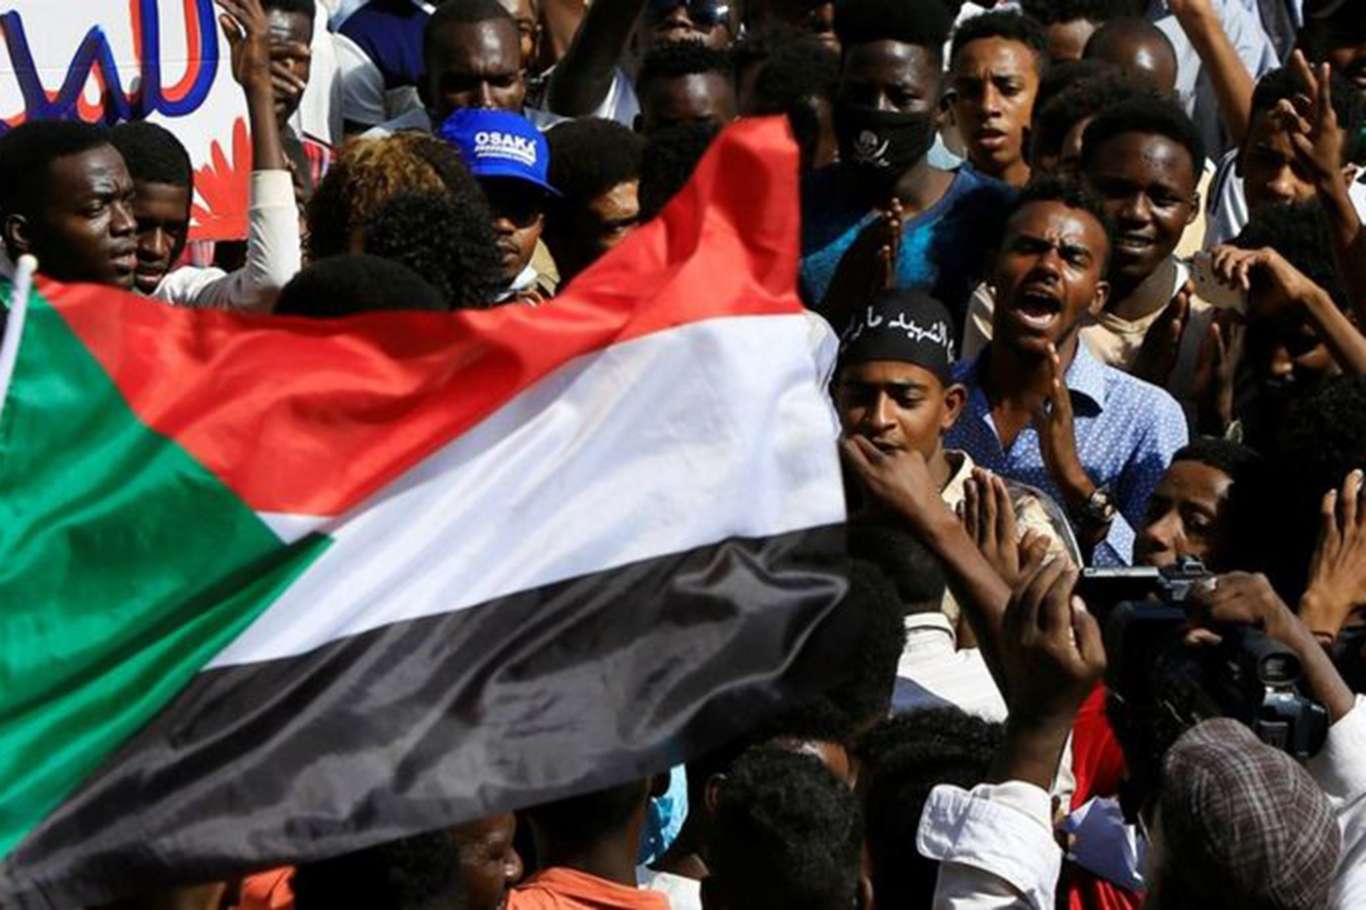 ABD’nin rüşvet talebine boyun eğen Sudan, işgal rejimiyle normalleşme talebine direnmeli